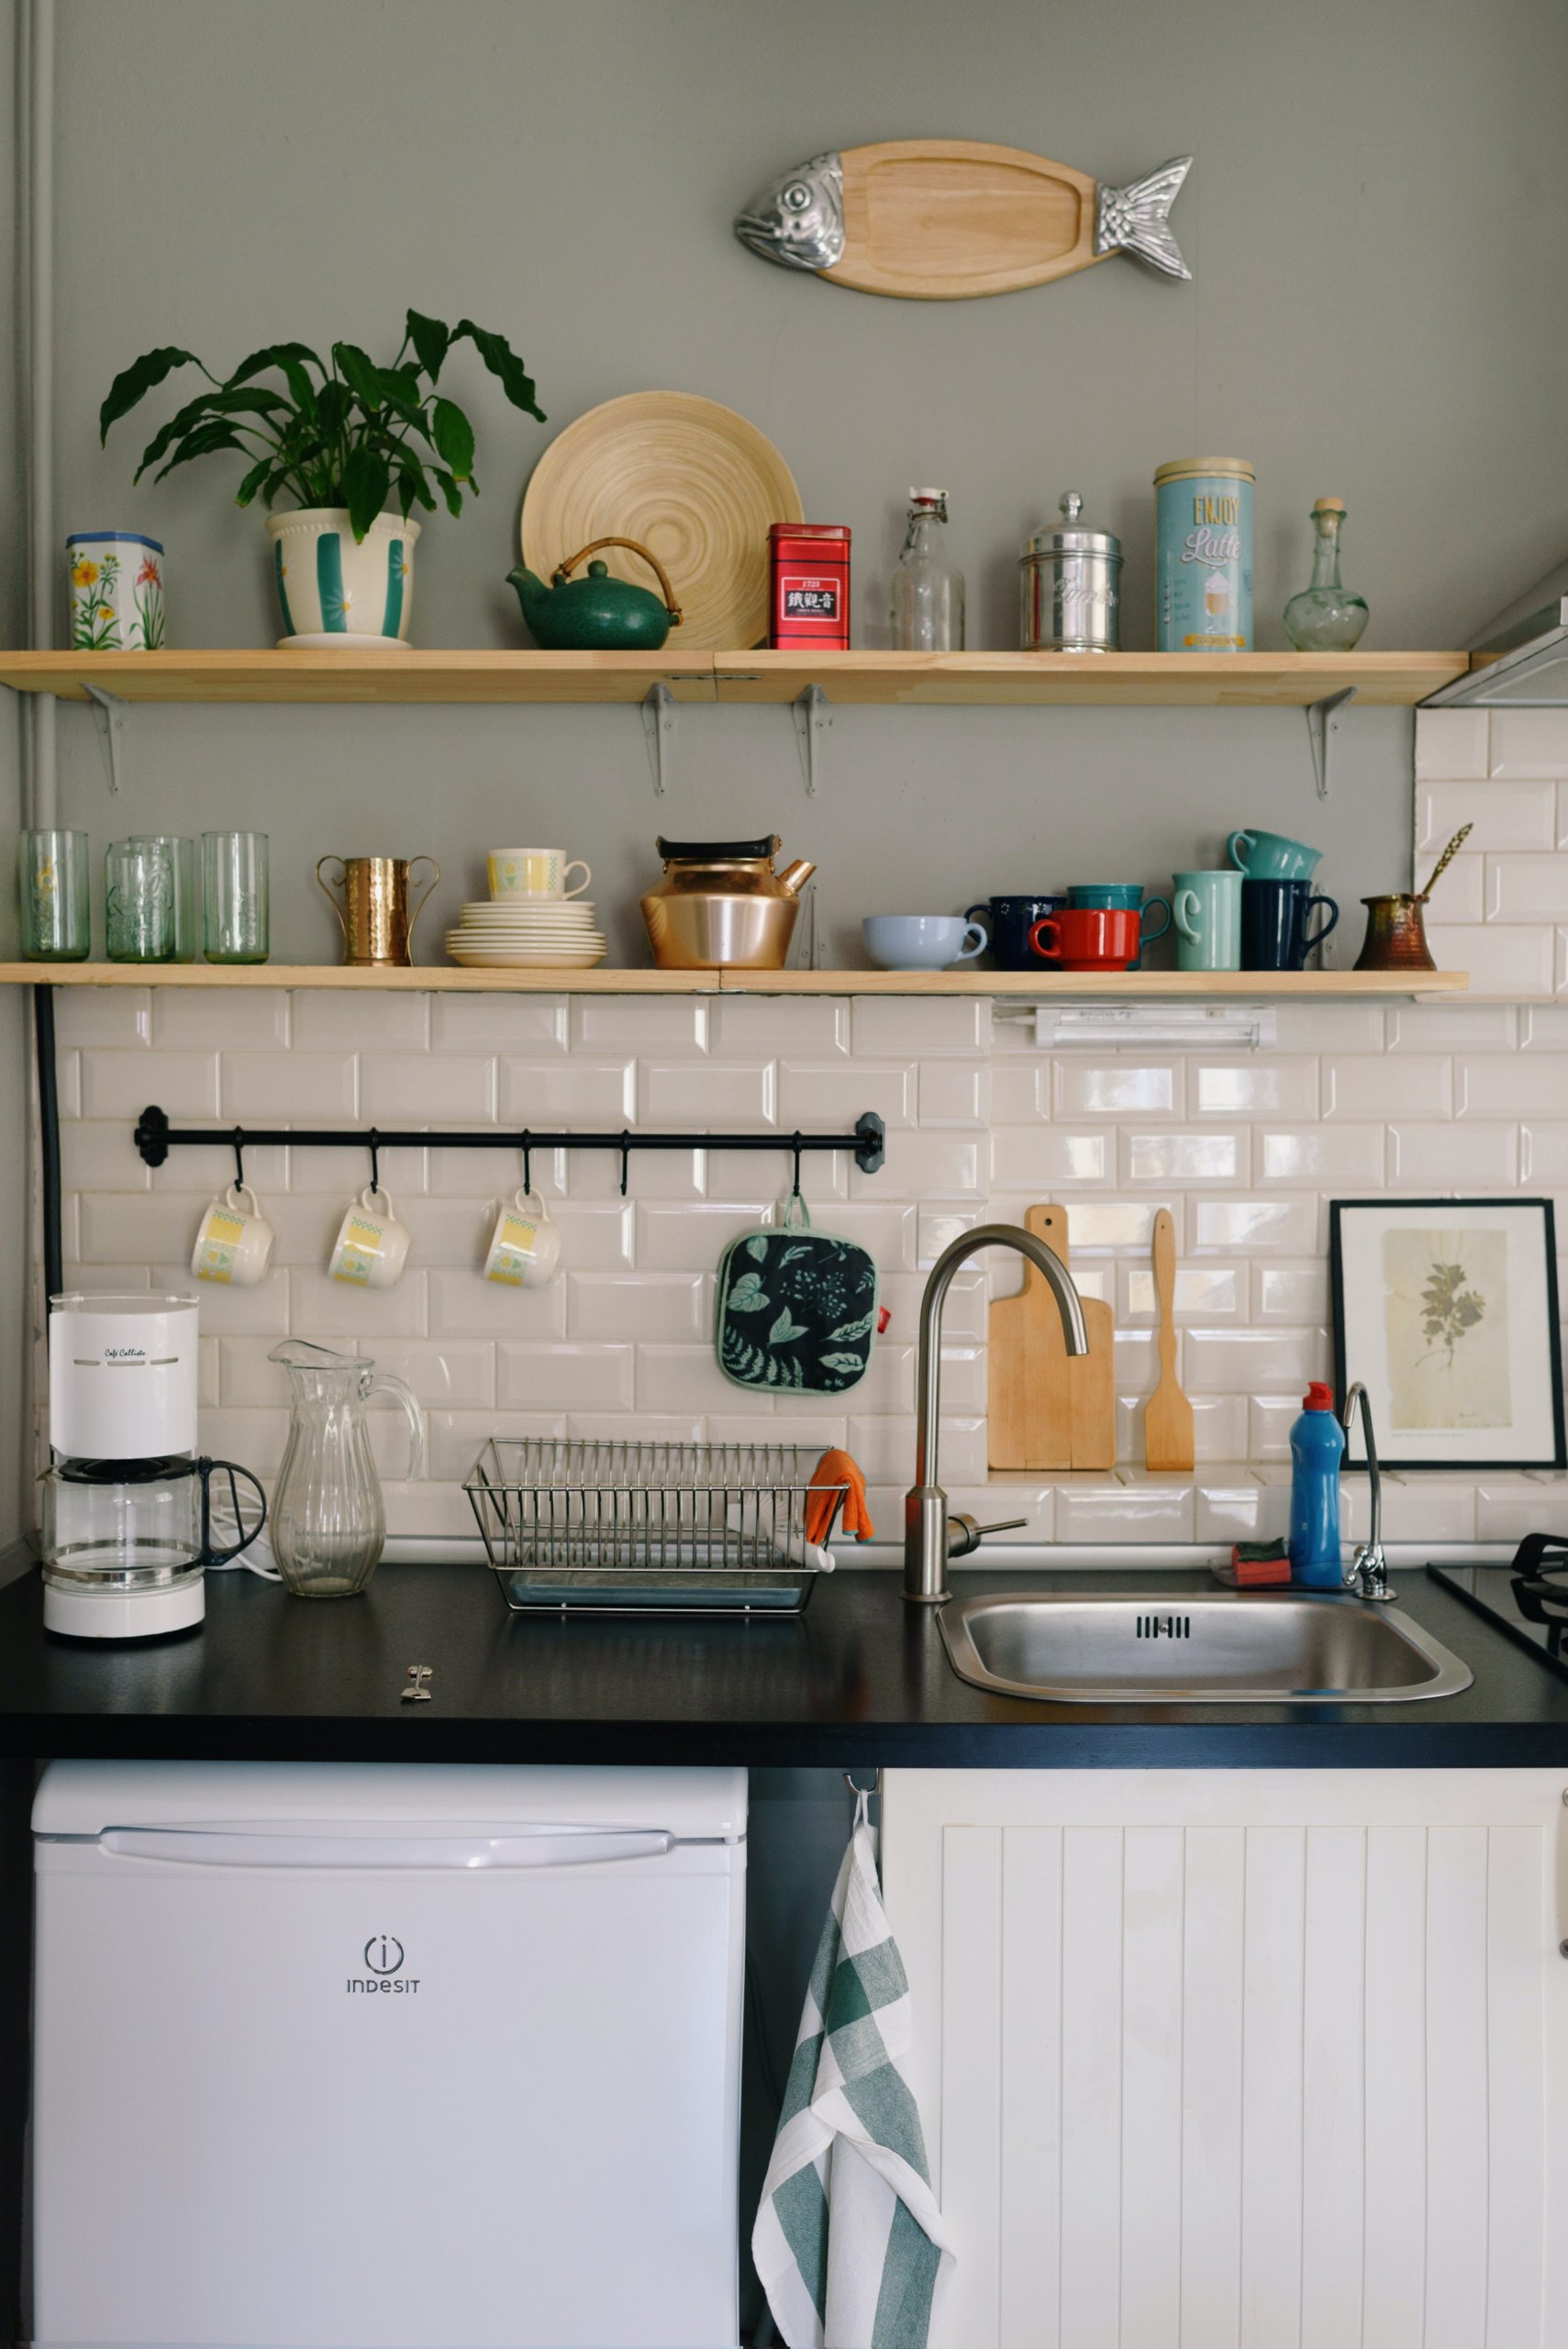 Trang trí tường bếp – điểm nhấn độc đáo tạo sức hút mạnh mẽ cho không gian nấu nướng - Ảnh 1.